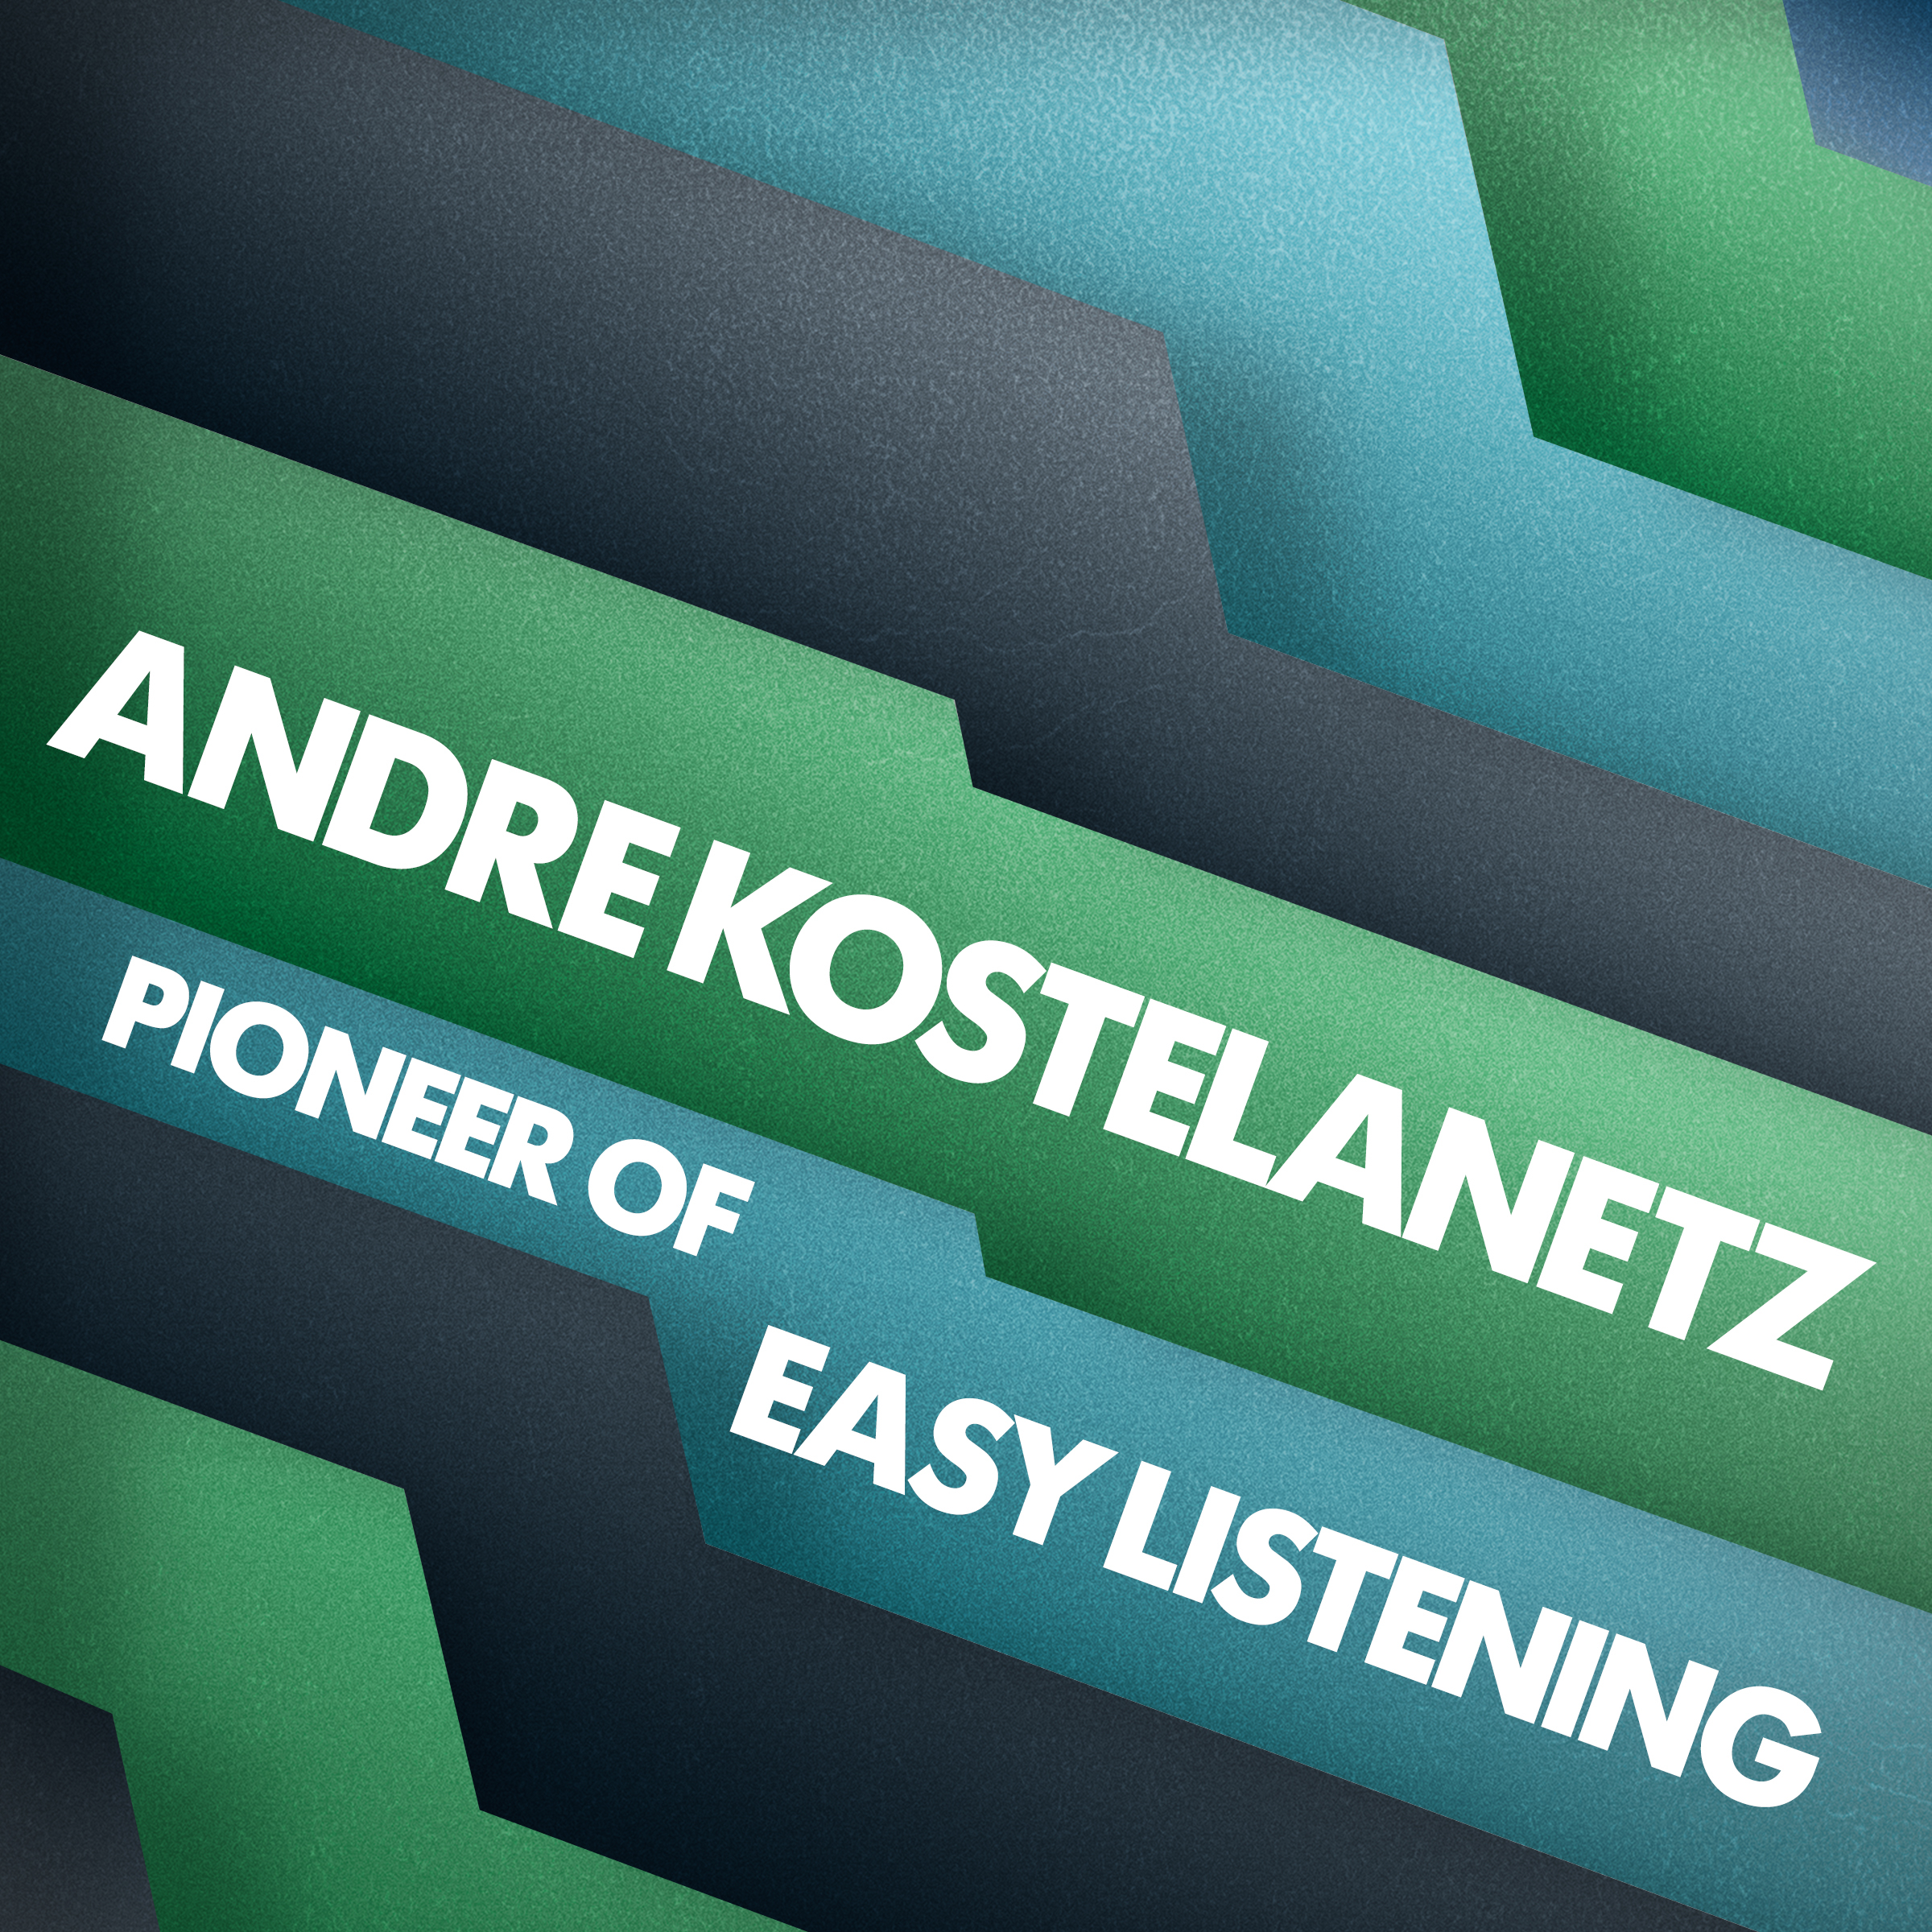 Pioneer of Easy Listening